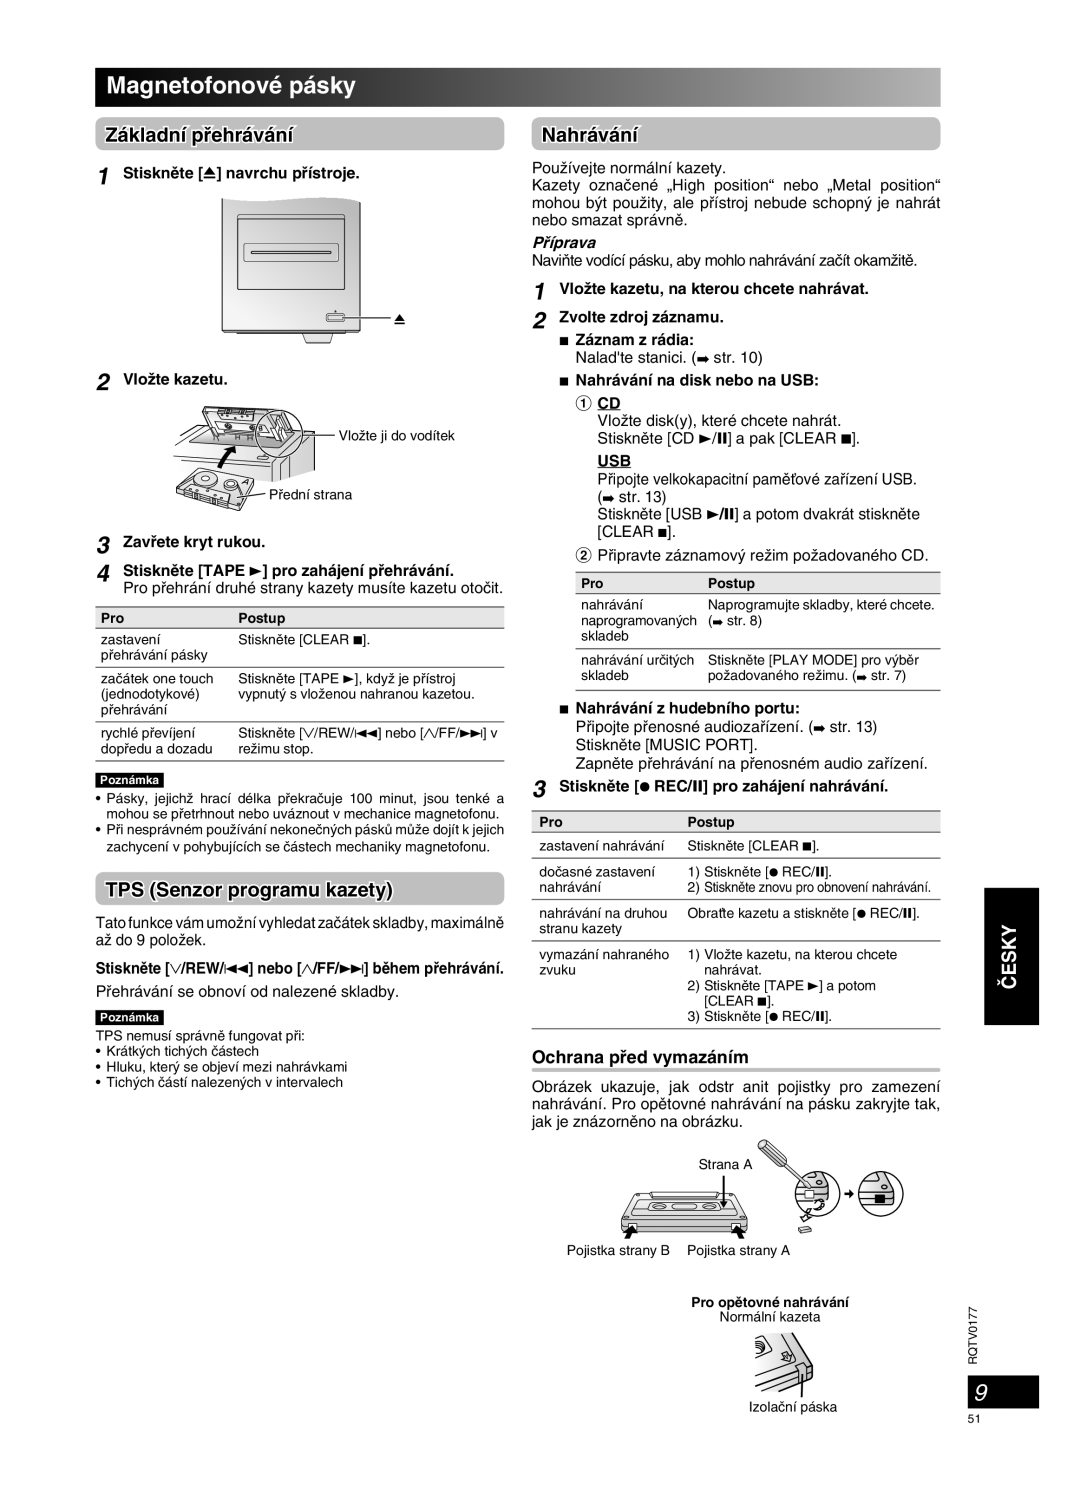 Panasonic SC-PM45 manual Magnetofonové pásky, Základní pﬁehrávání, TPS Senzor programu kazety, Nahrávání, âESKY, Pﬁíprava 